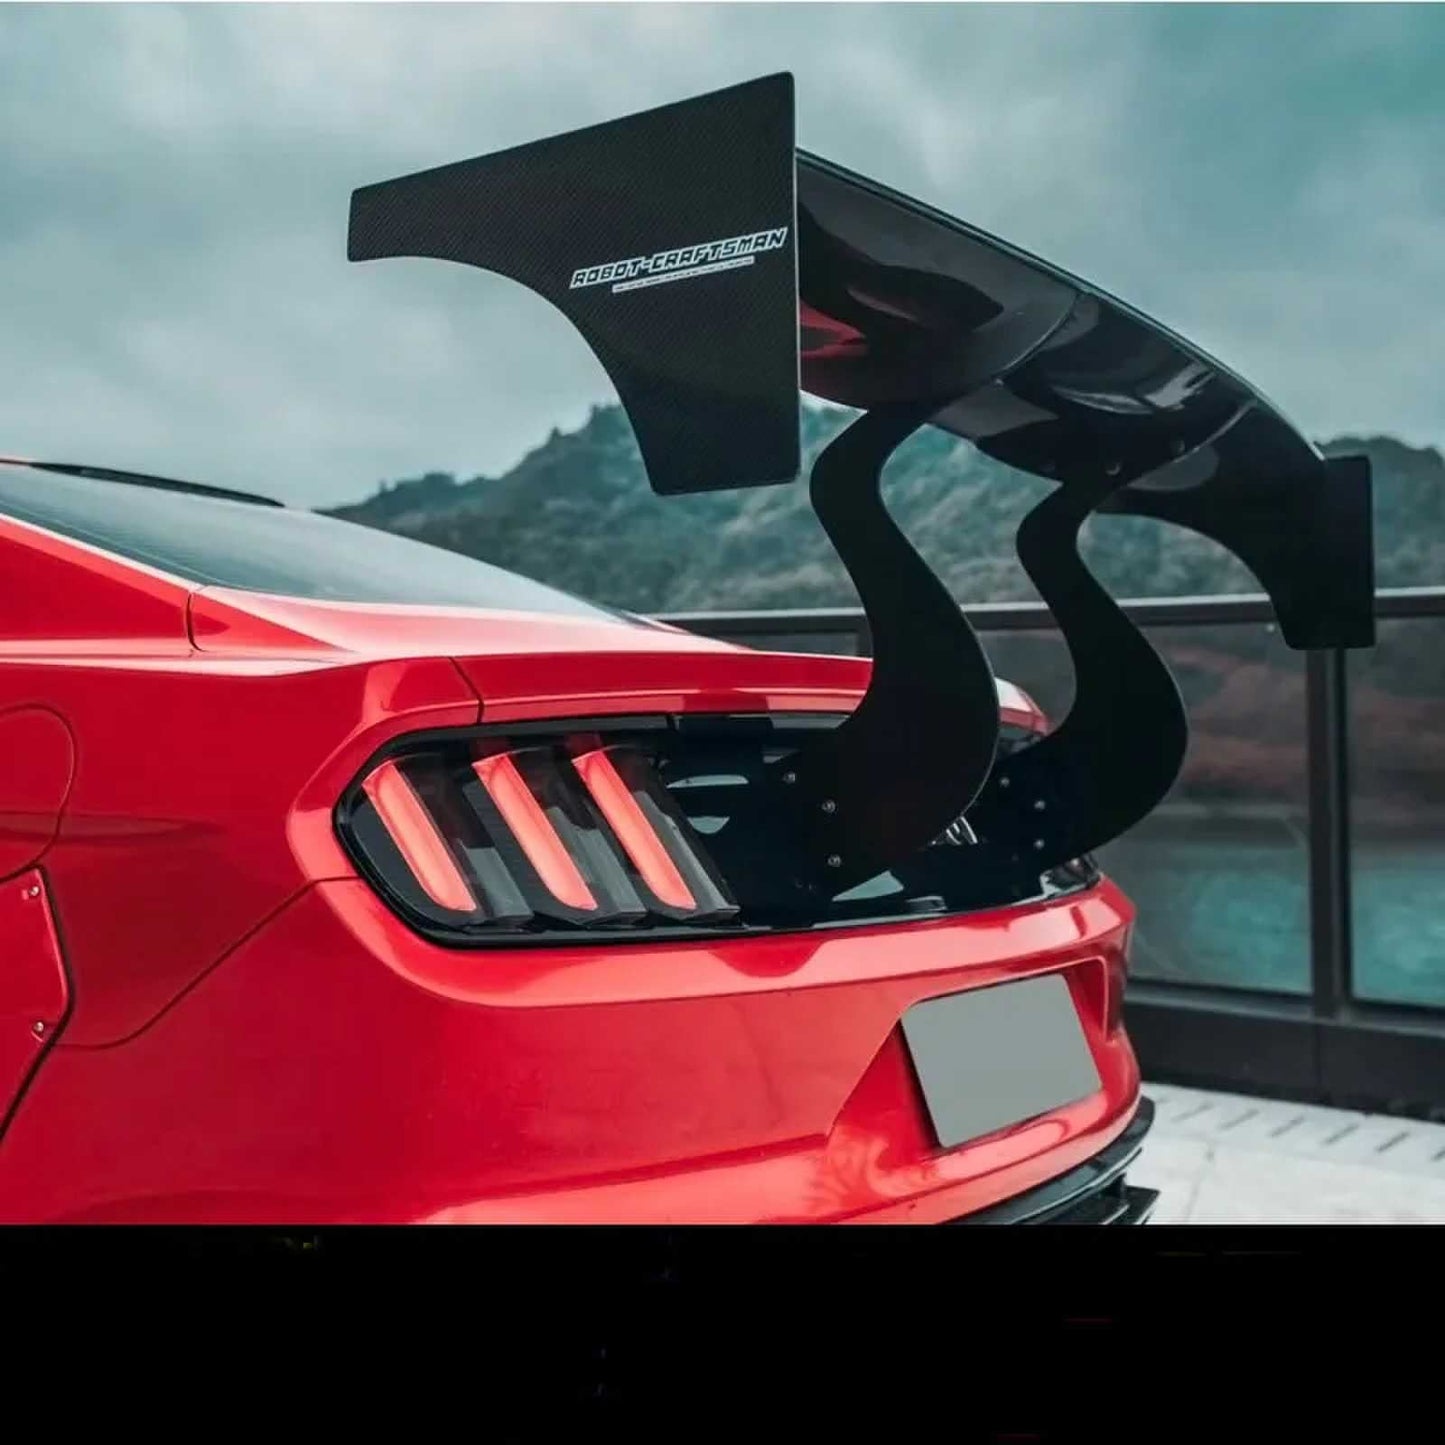 Robot GT Type Carbon Fiber Rear Spoiler Spoiler For Ford Mustang 15-21